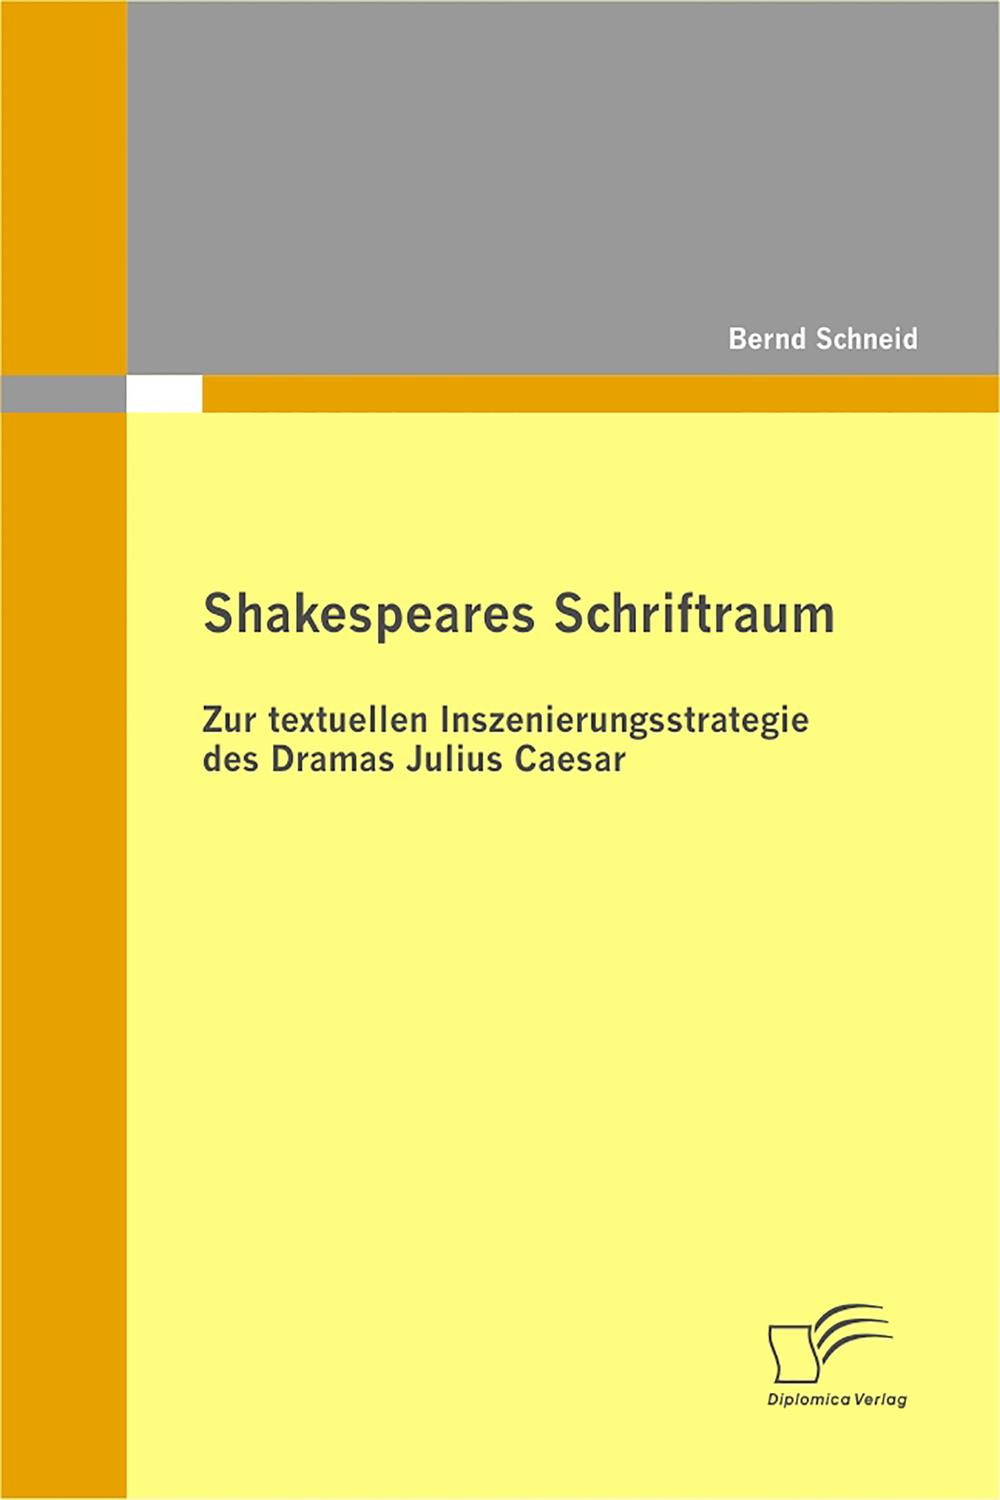 Shakespeares Schriftraum - Bernd Schneid